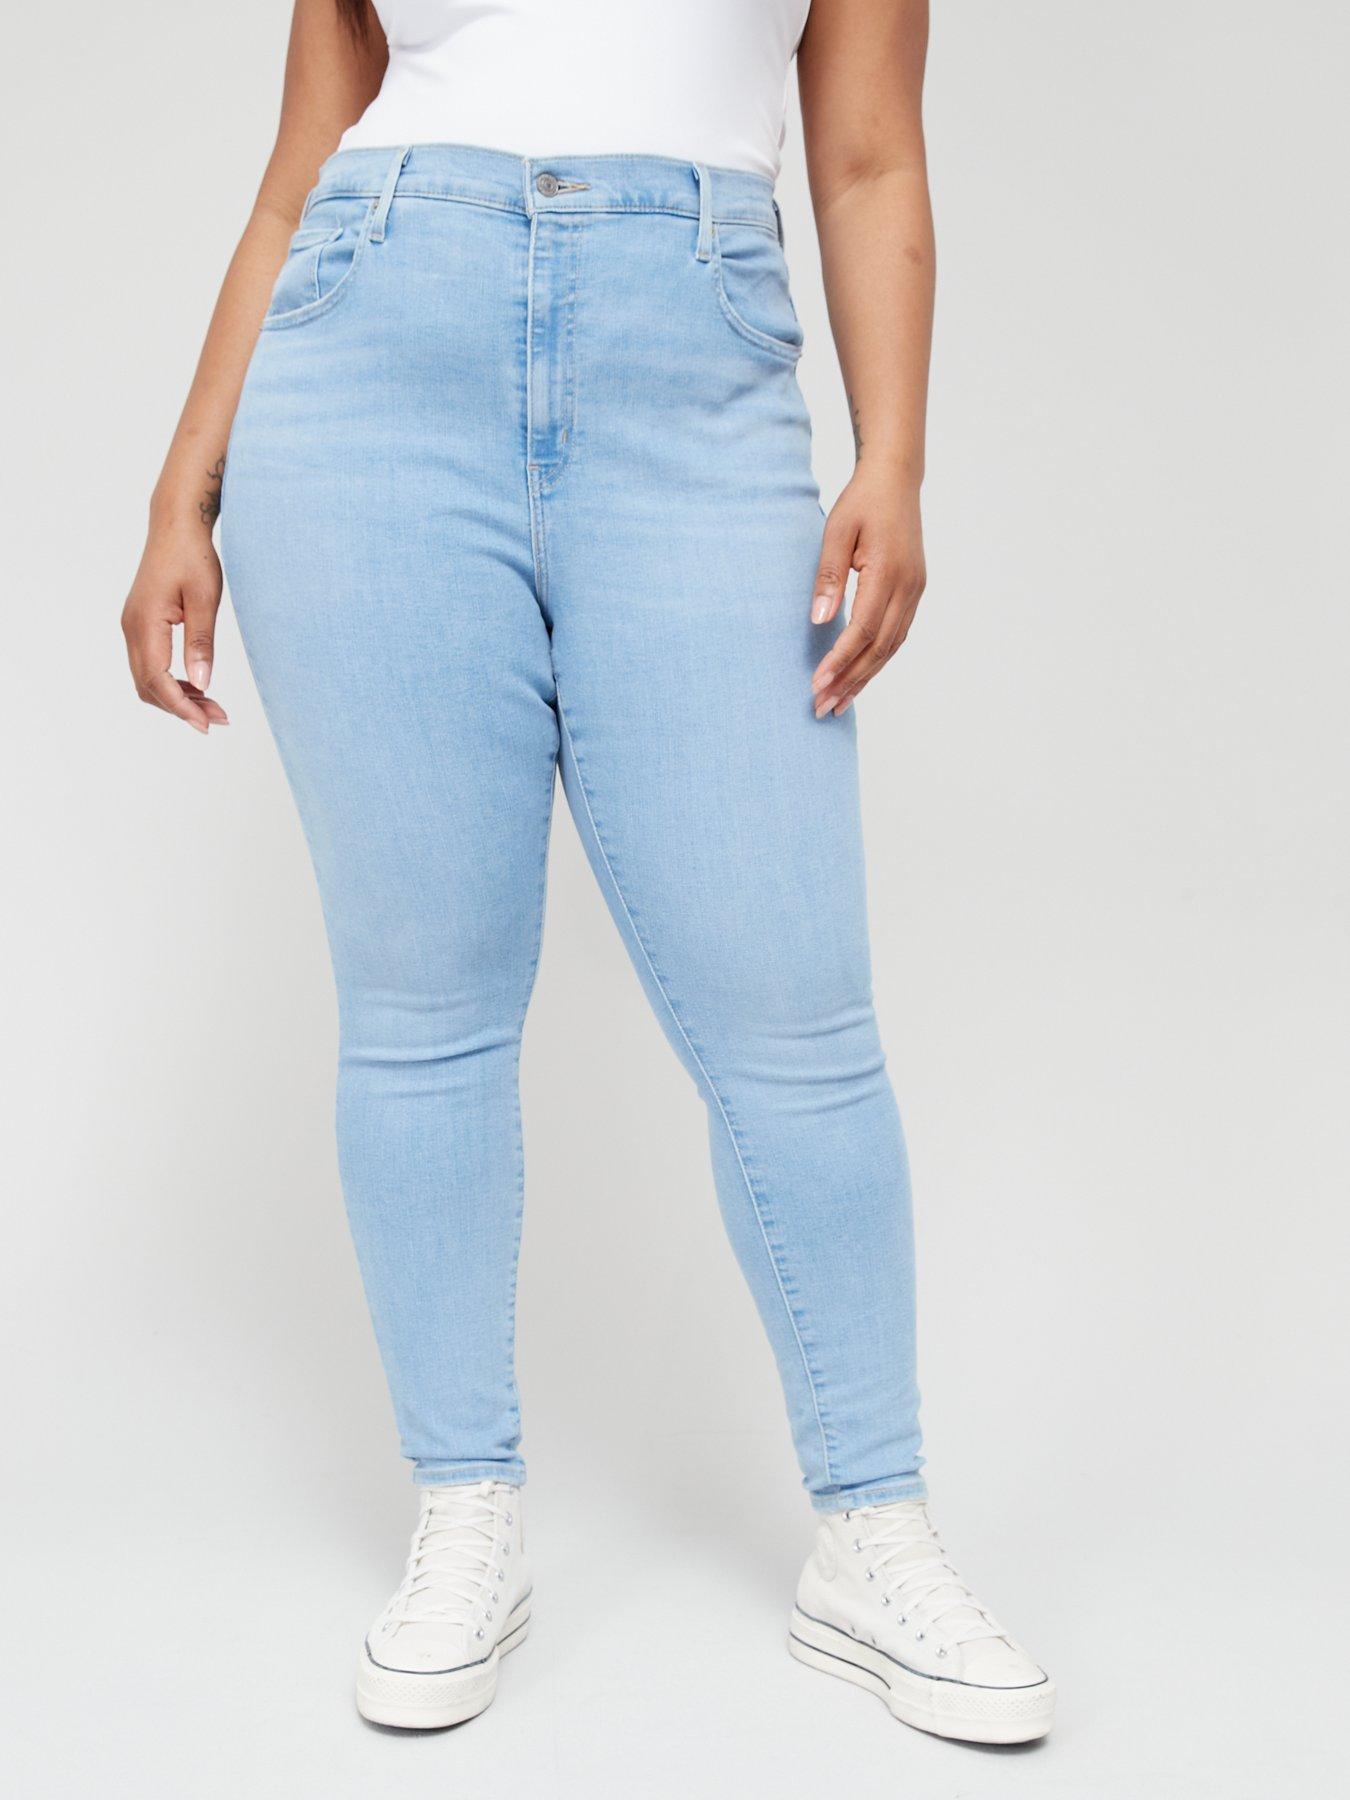 Women's Levi's Plus Size Jeans 